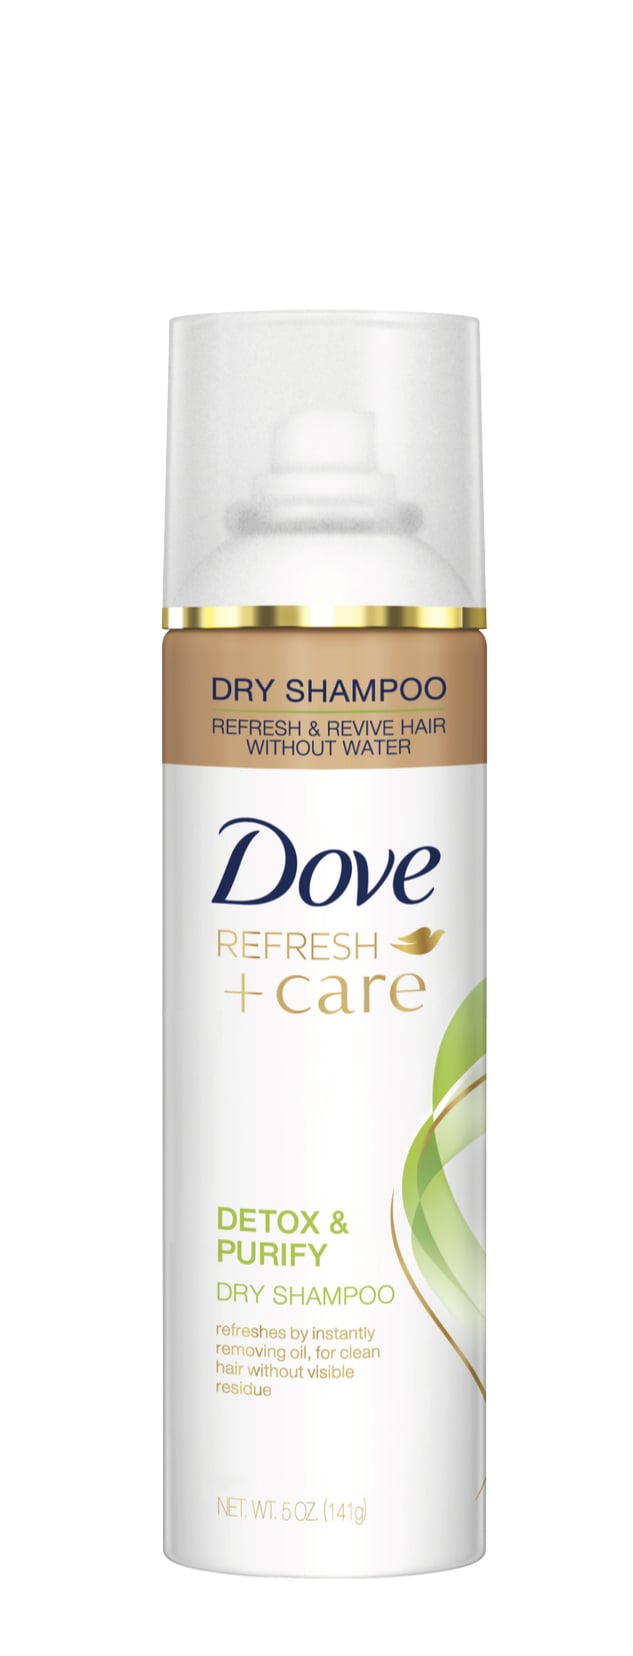 Dove Refresh+Care Detox & Purify Dry Shampoo